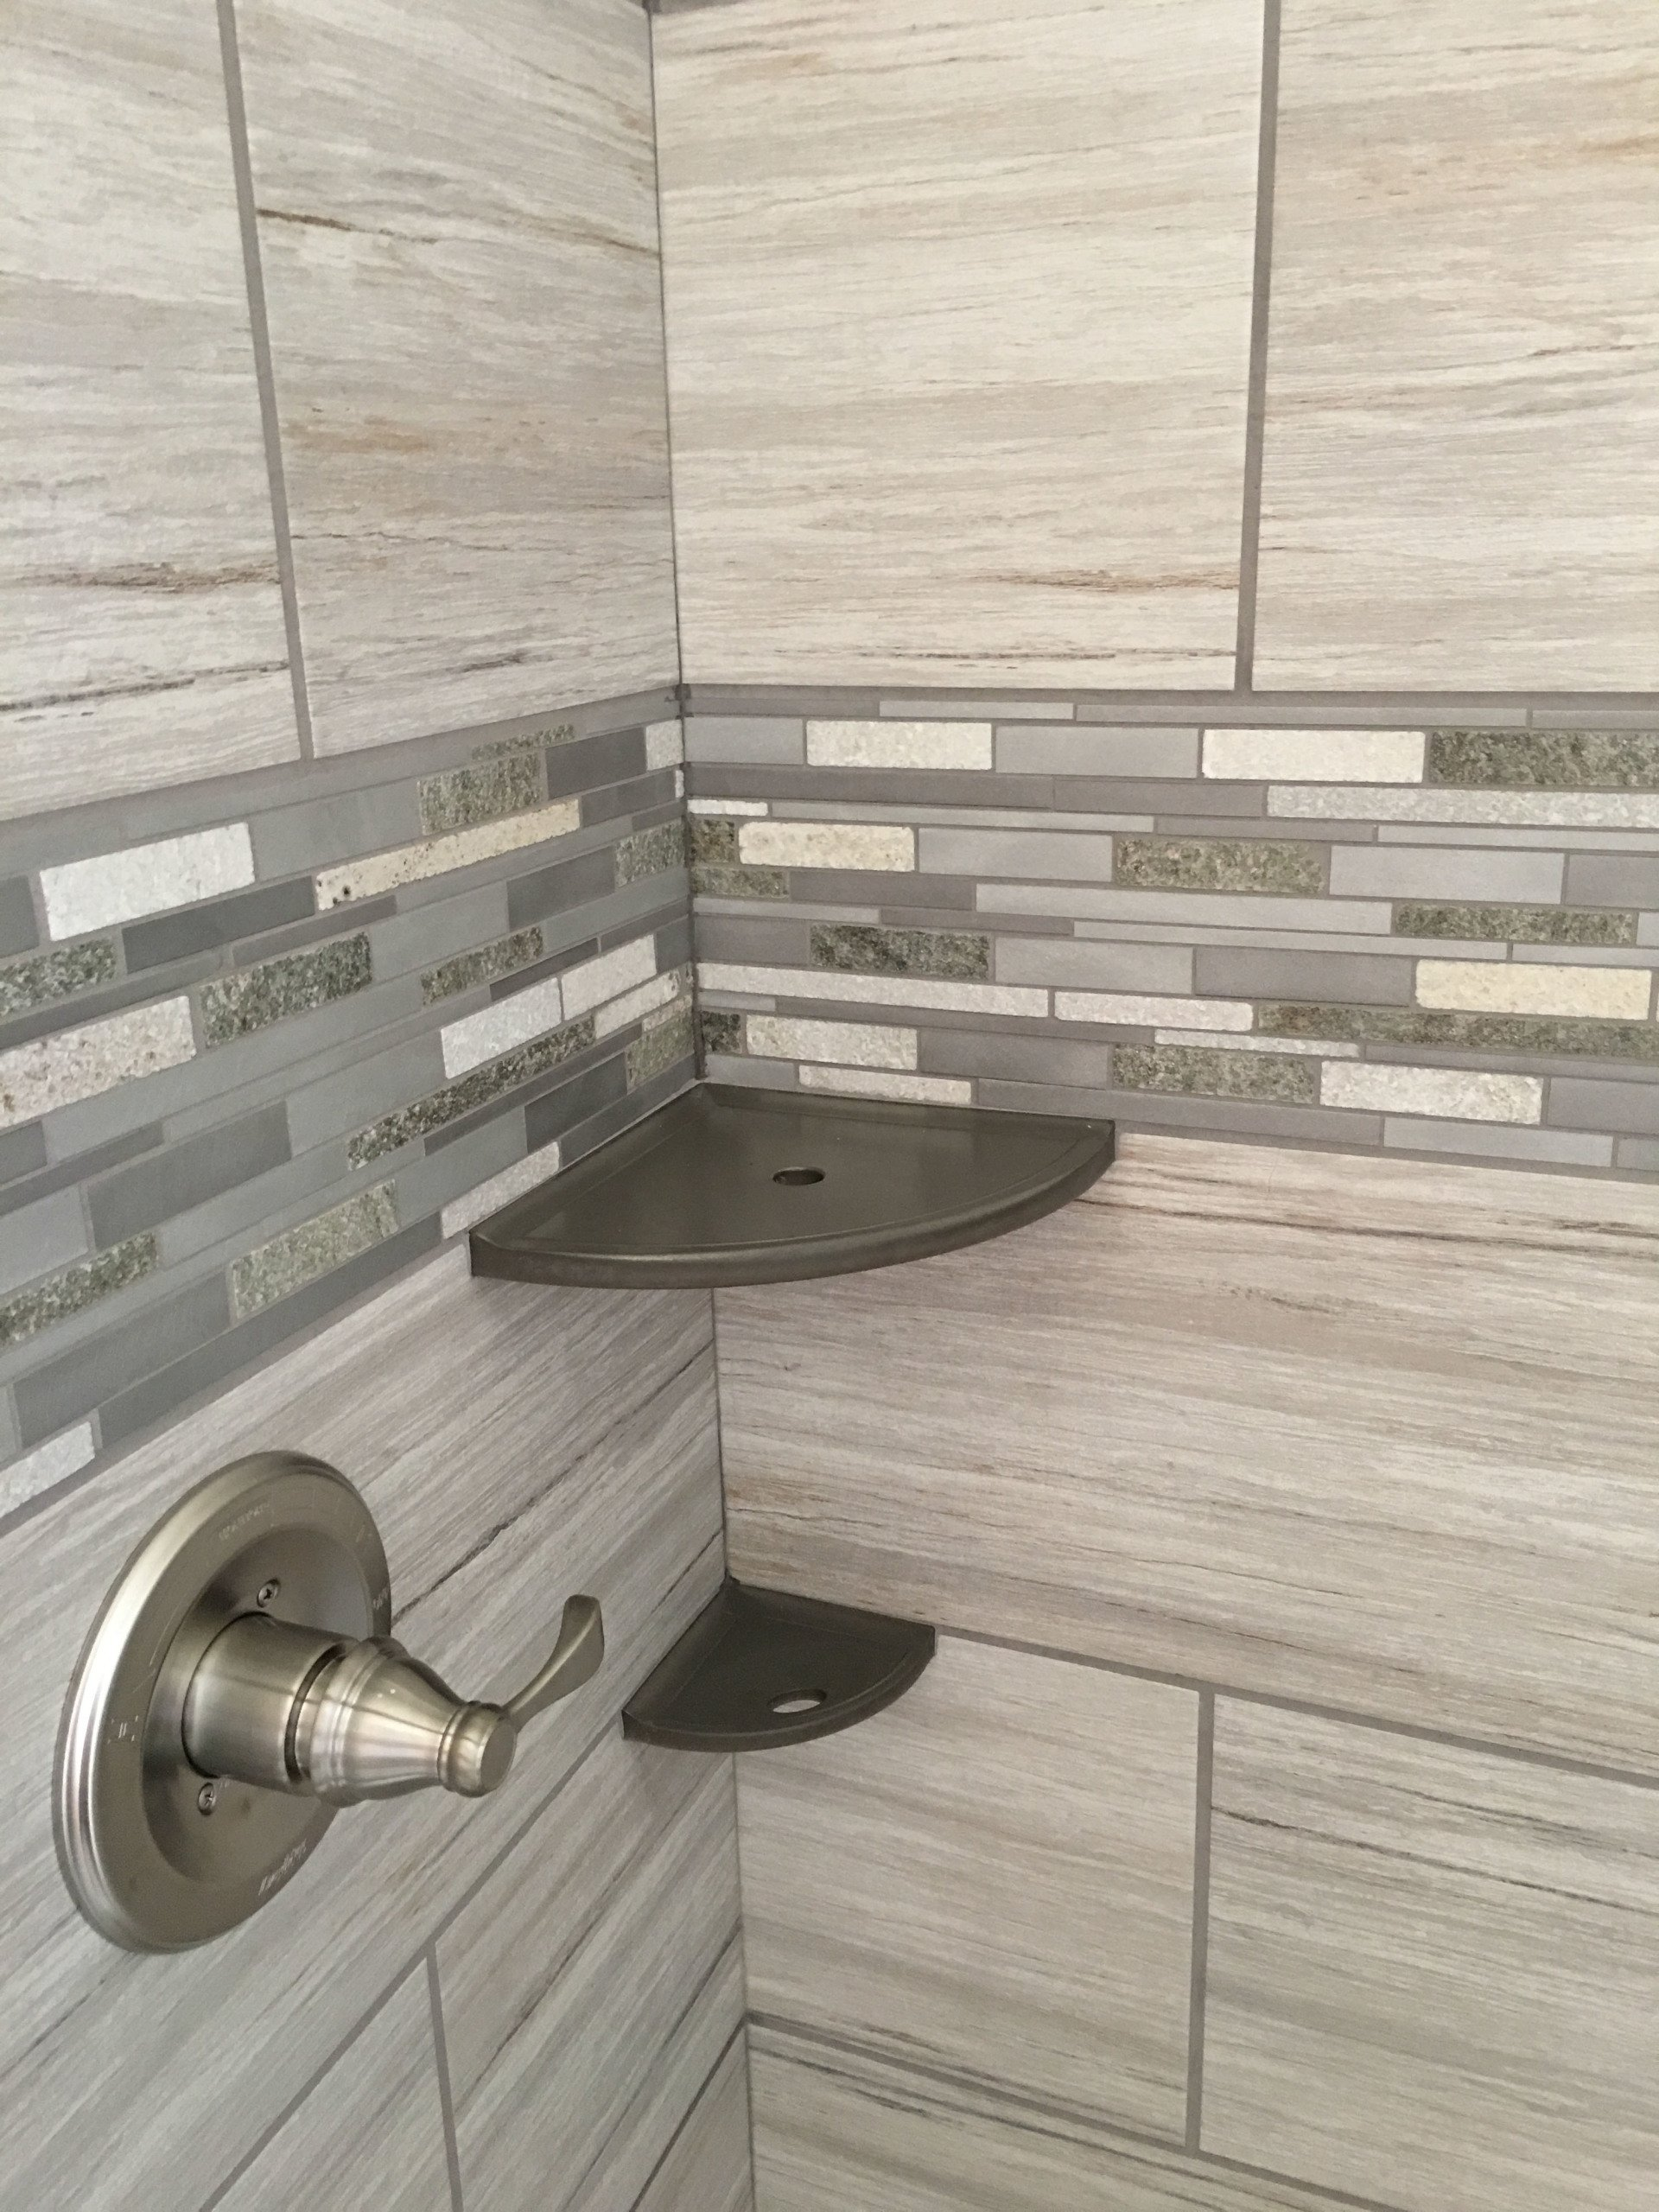 Shower Tile Border, Bathroom Tile Border Design Ideas